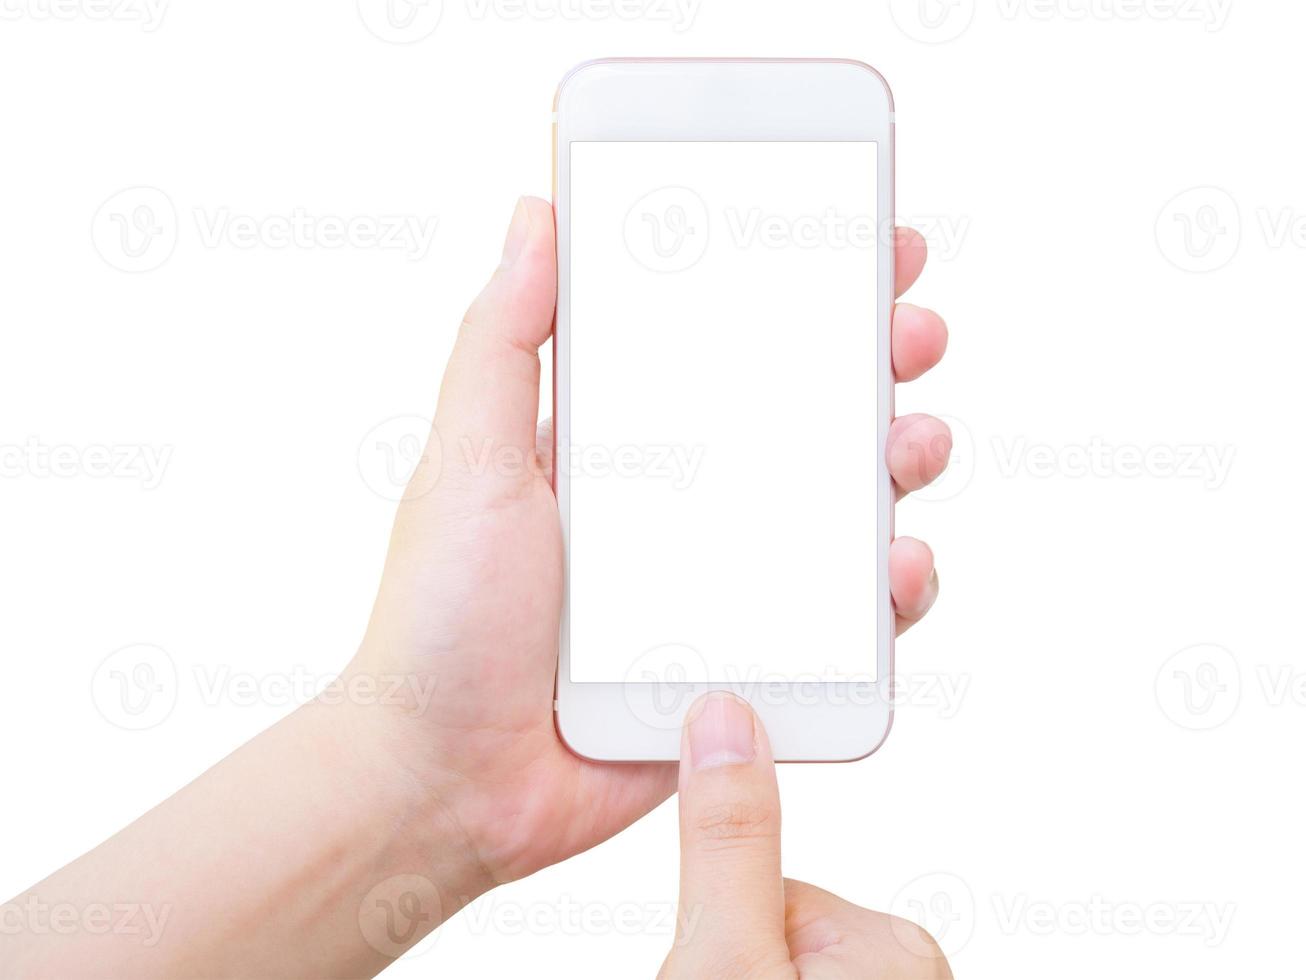 mano che tiene smart phone isolato su sfondo bianco foto